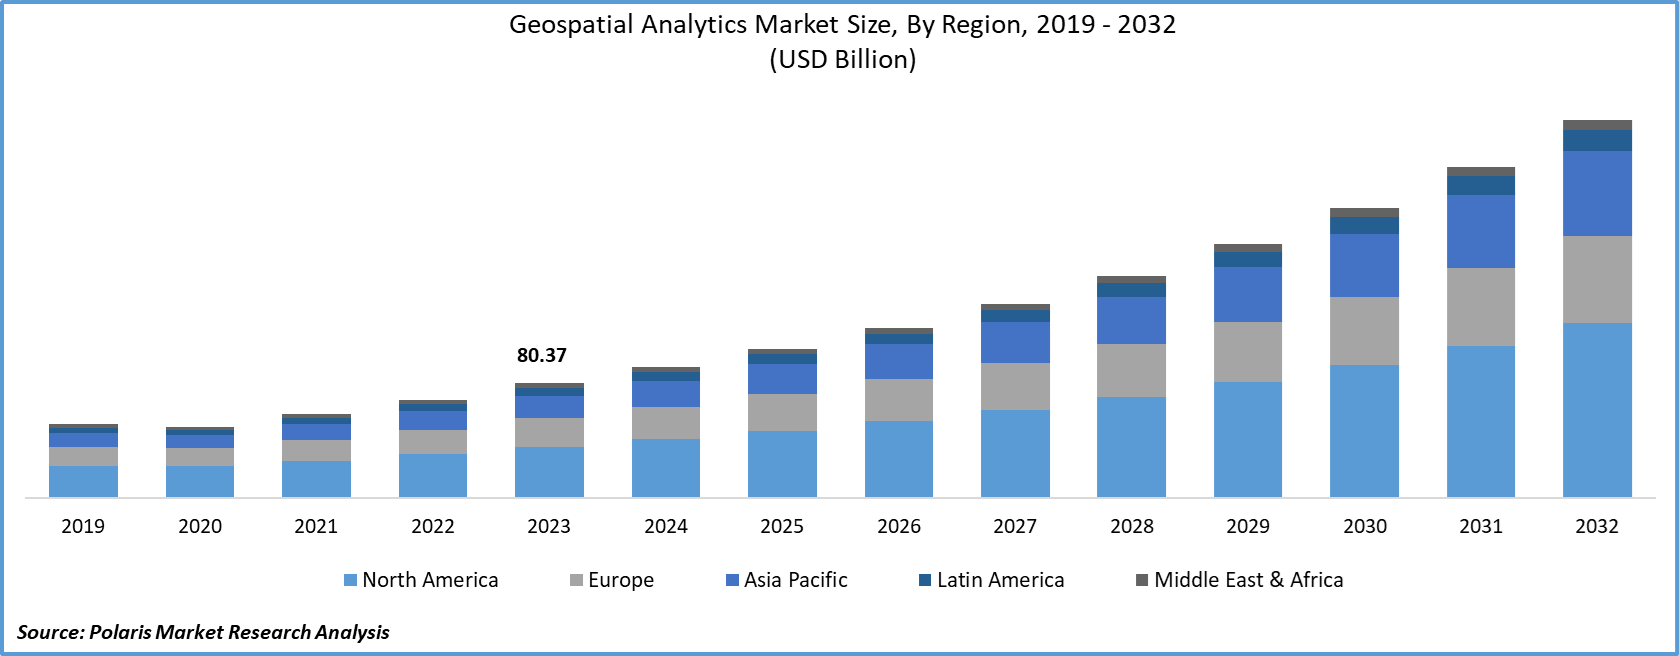 Geospatial Analytics Market Size